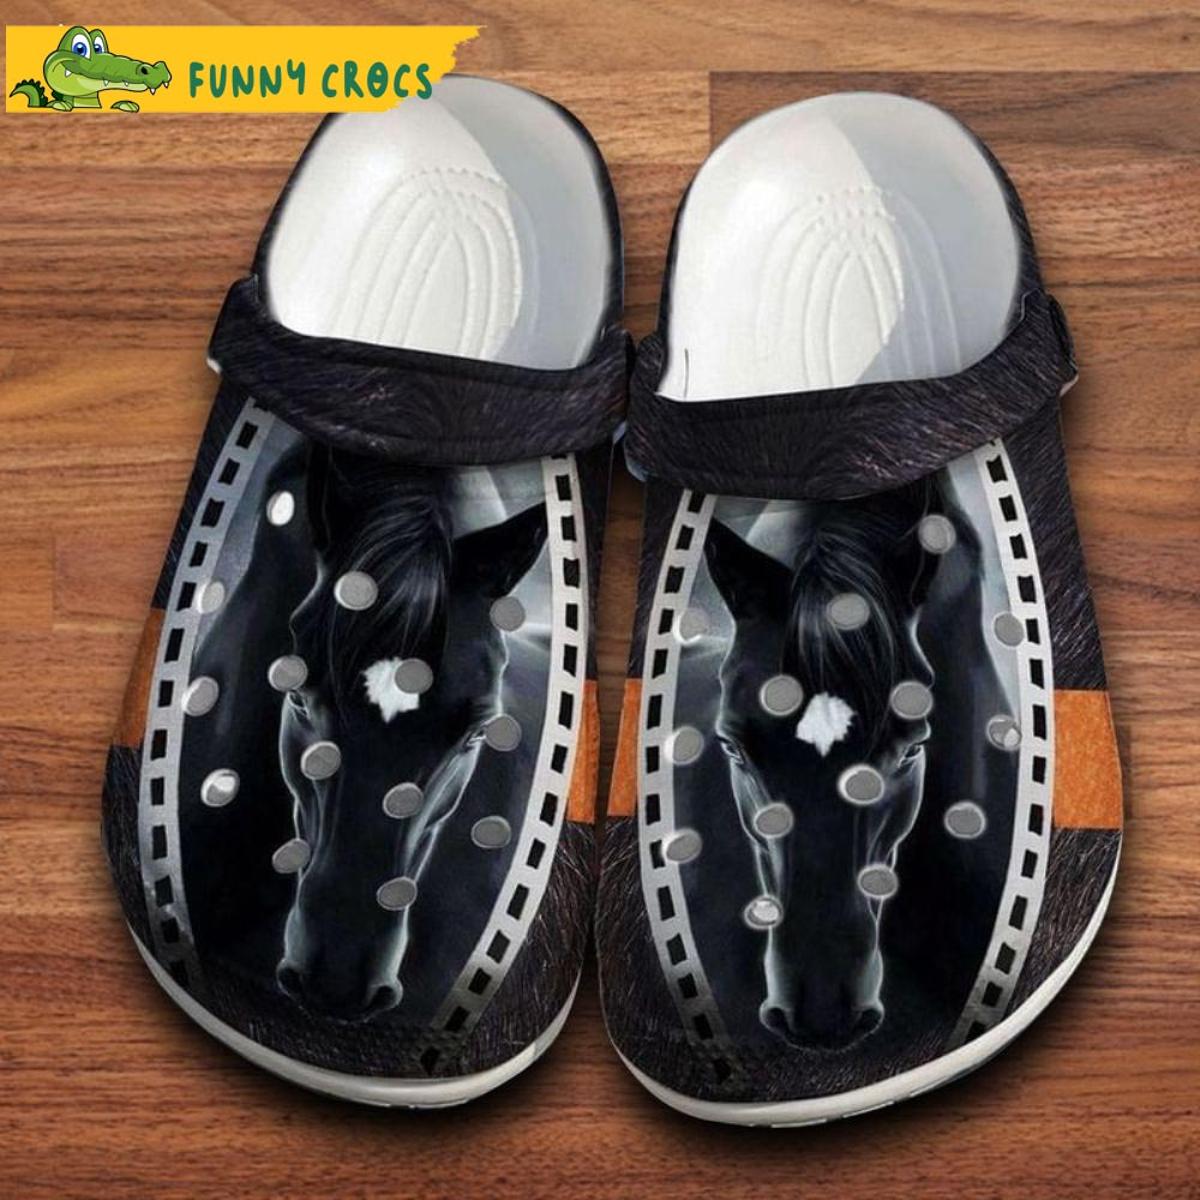 Cool Black Horse Crocs Clog Shoes